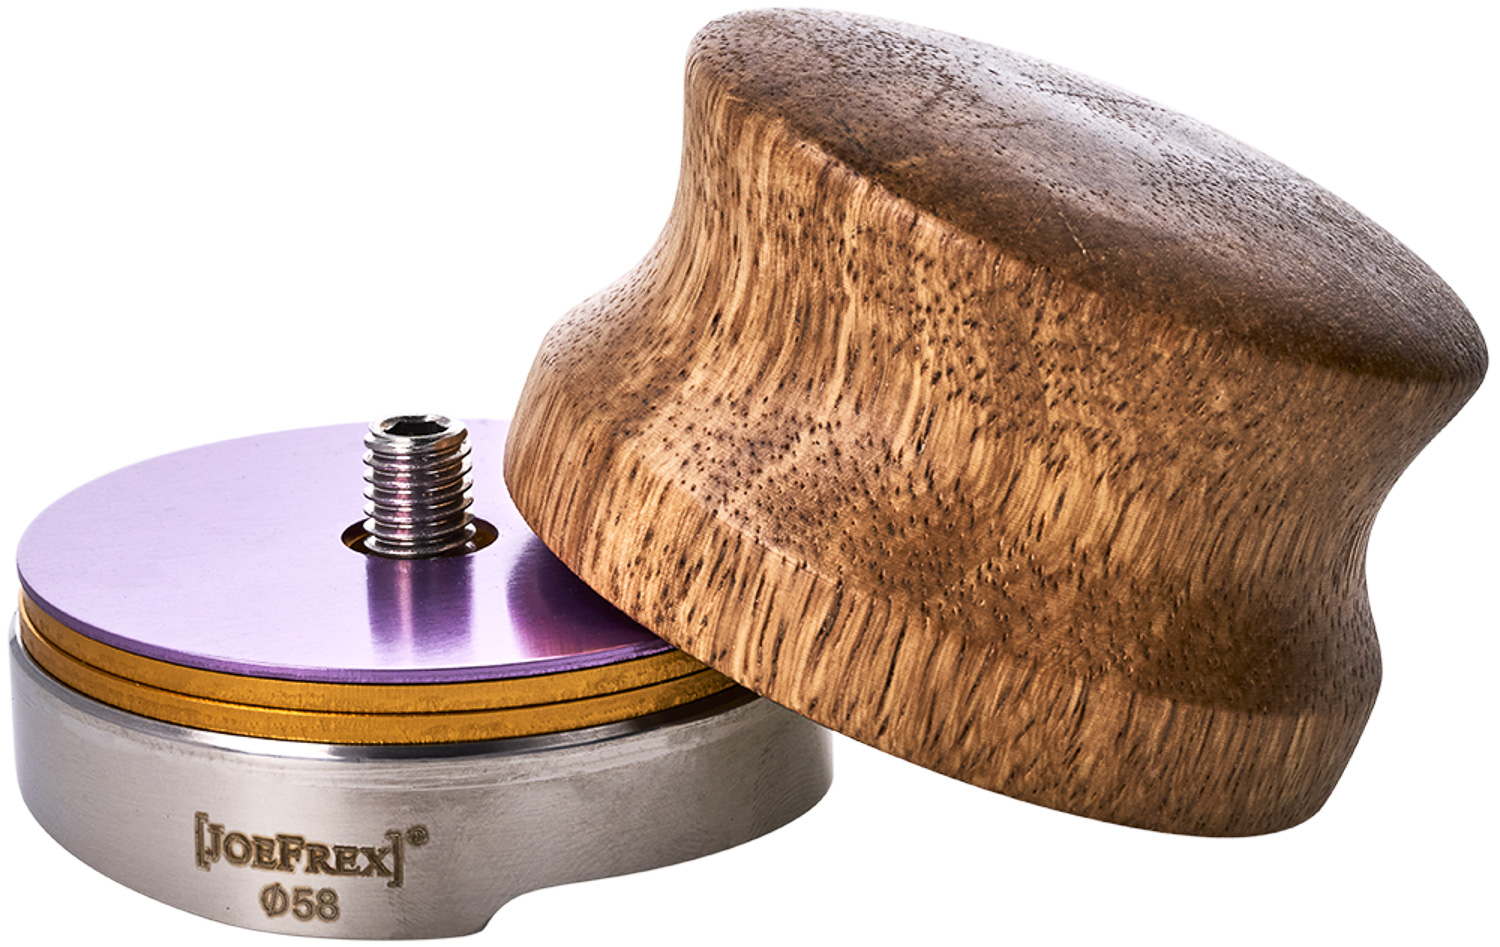 JoeFrex - Leveler 58 mm, Edelstahl und Palisander Holz